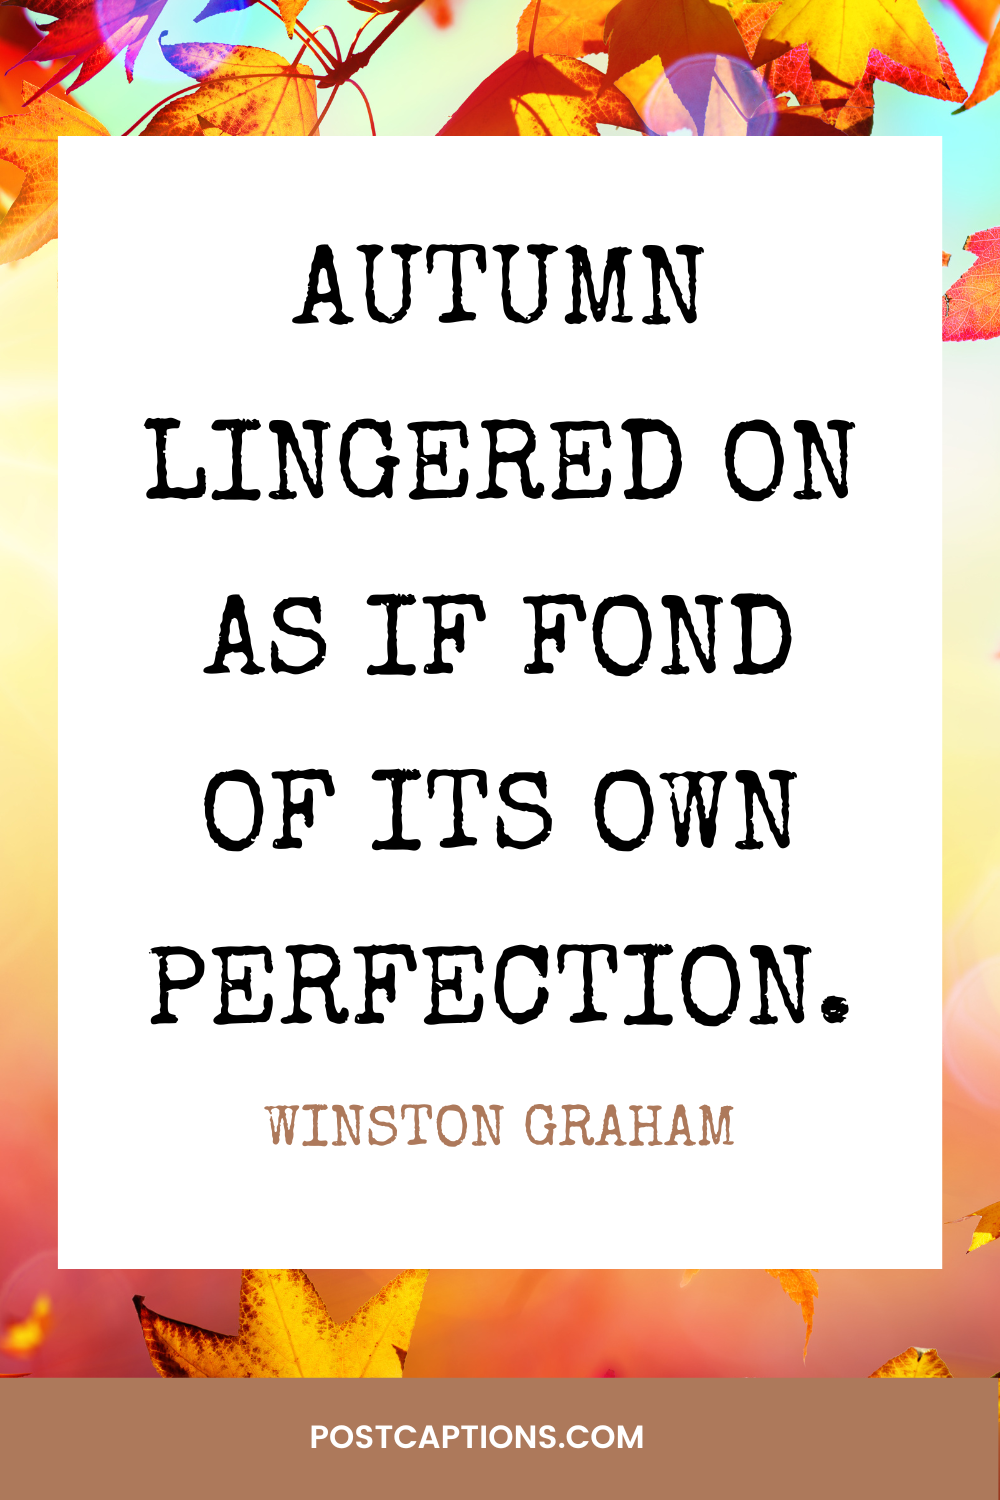 Autumn Quotes for Instagram